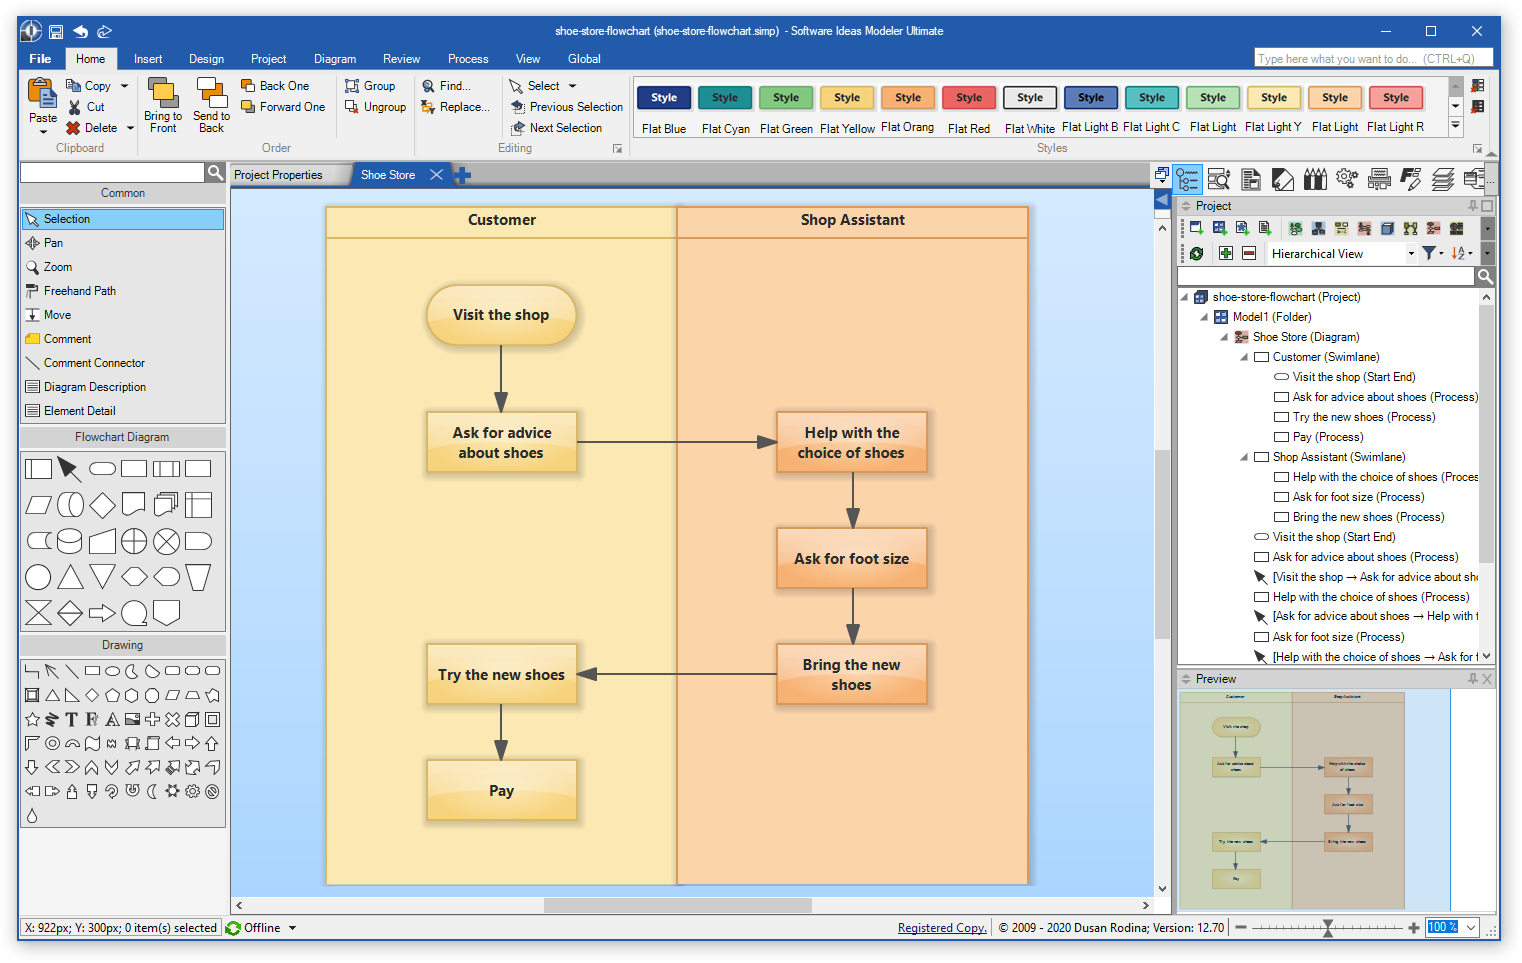 Software Ideas Modeler 12.70 - Flowchart Maker Window